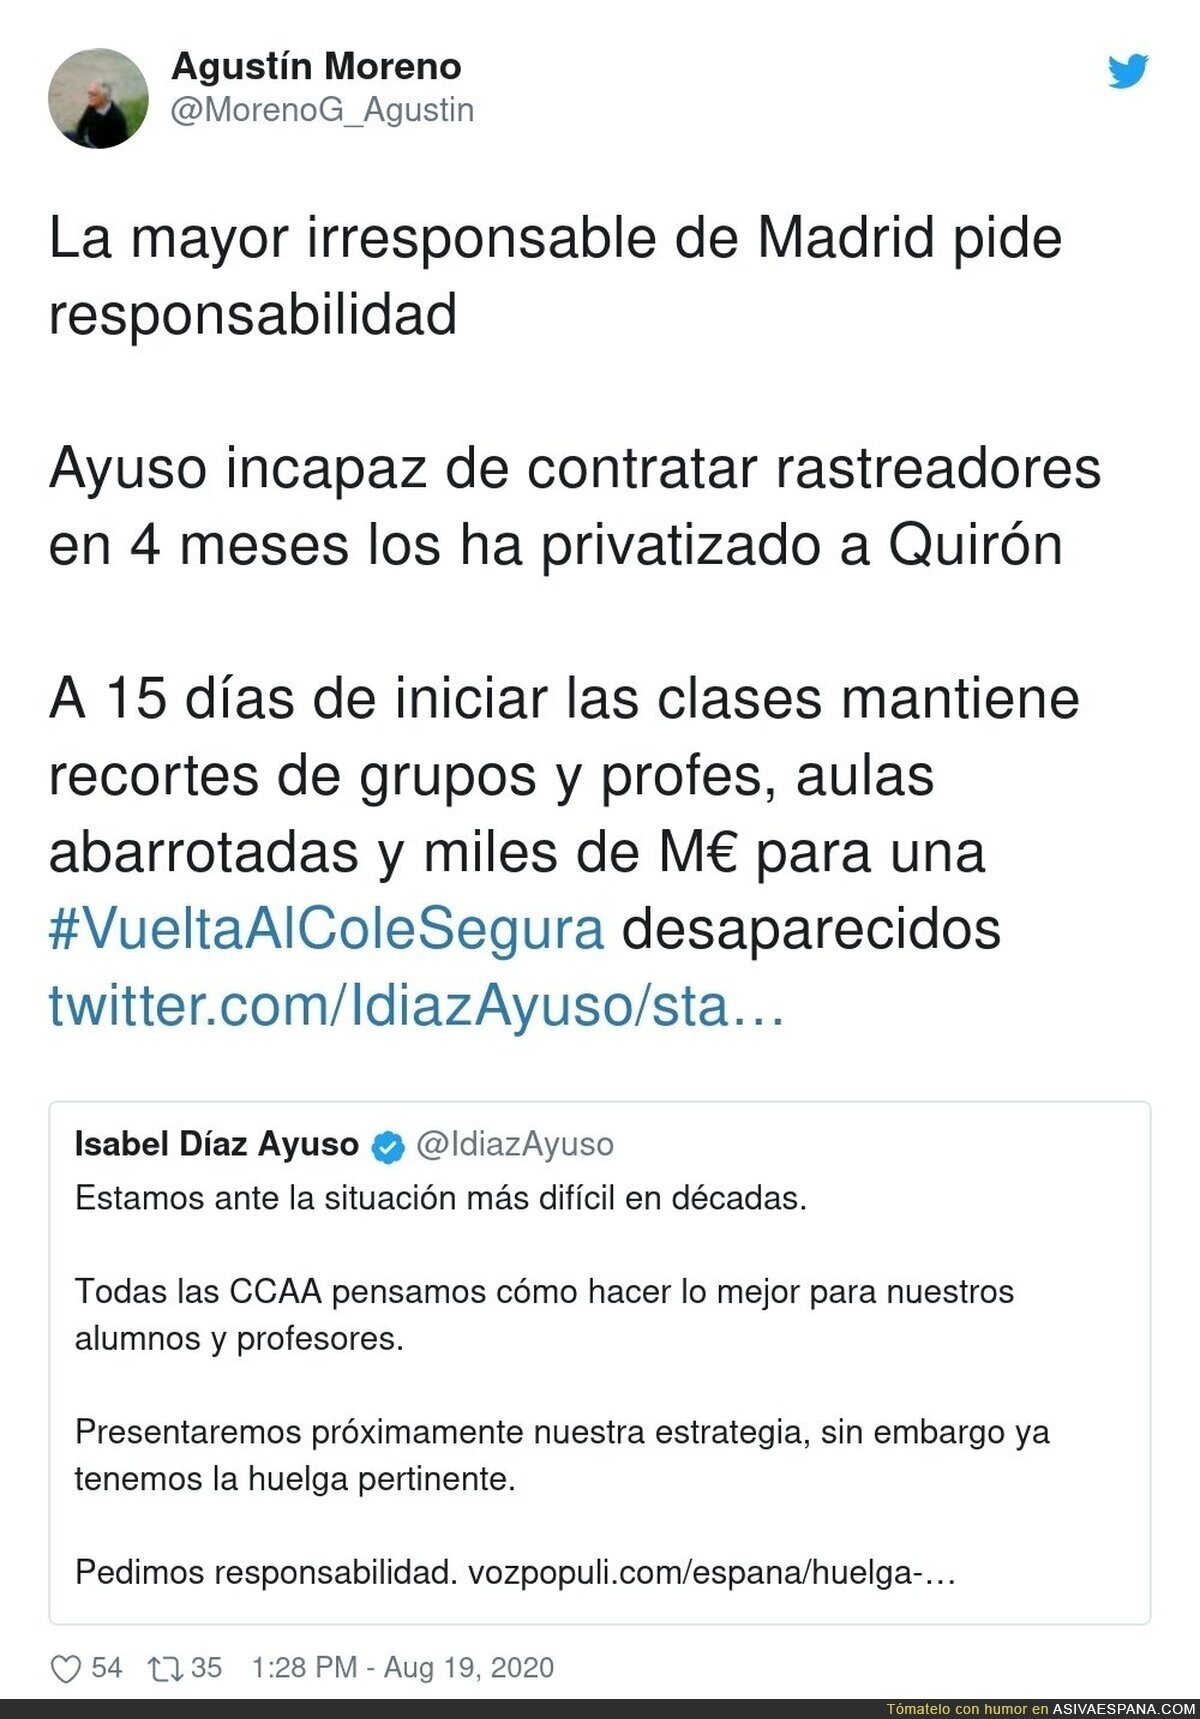 Terrible lo de Isabel Díaz Ayuso culpando a los profesores